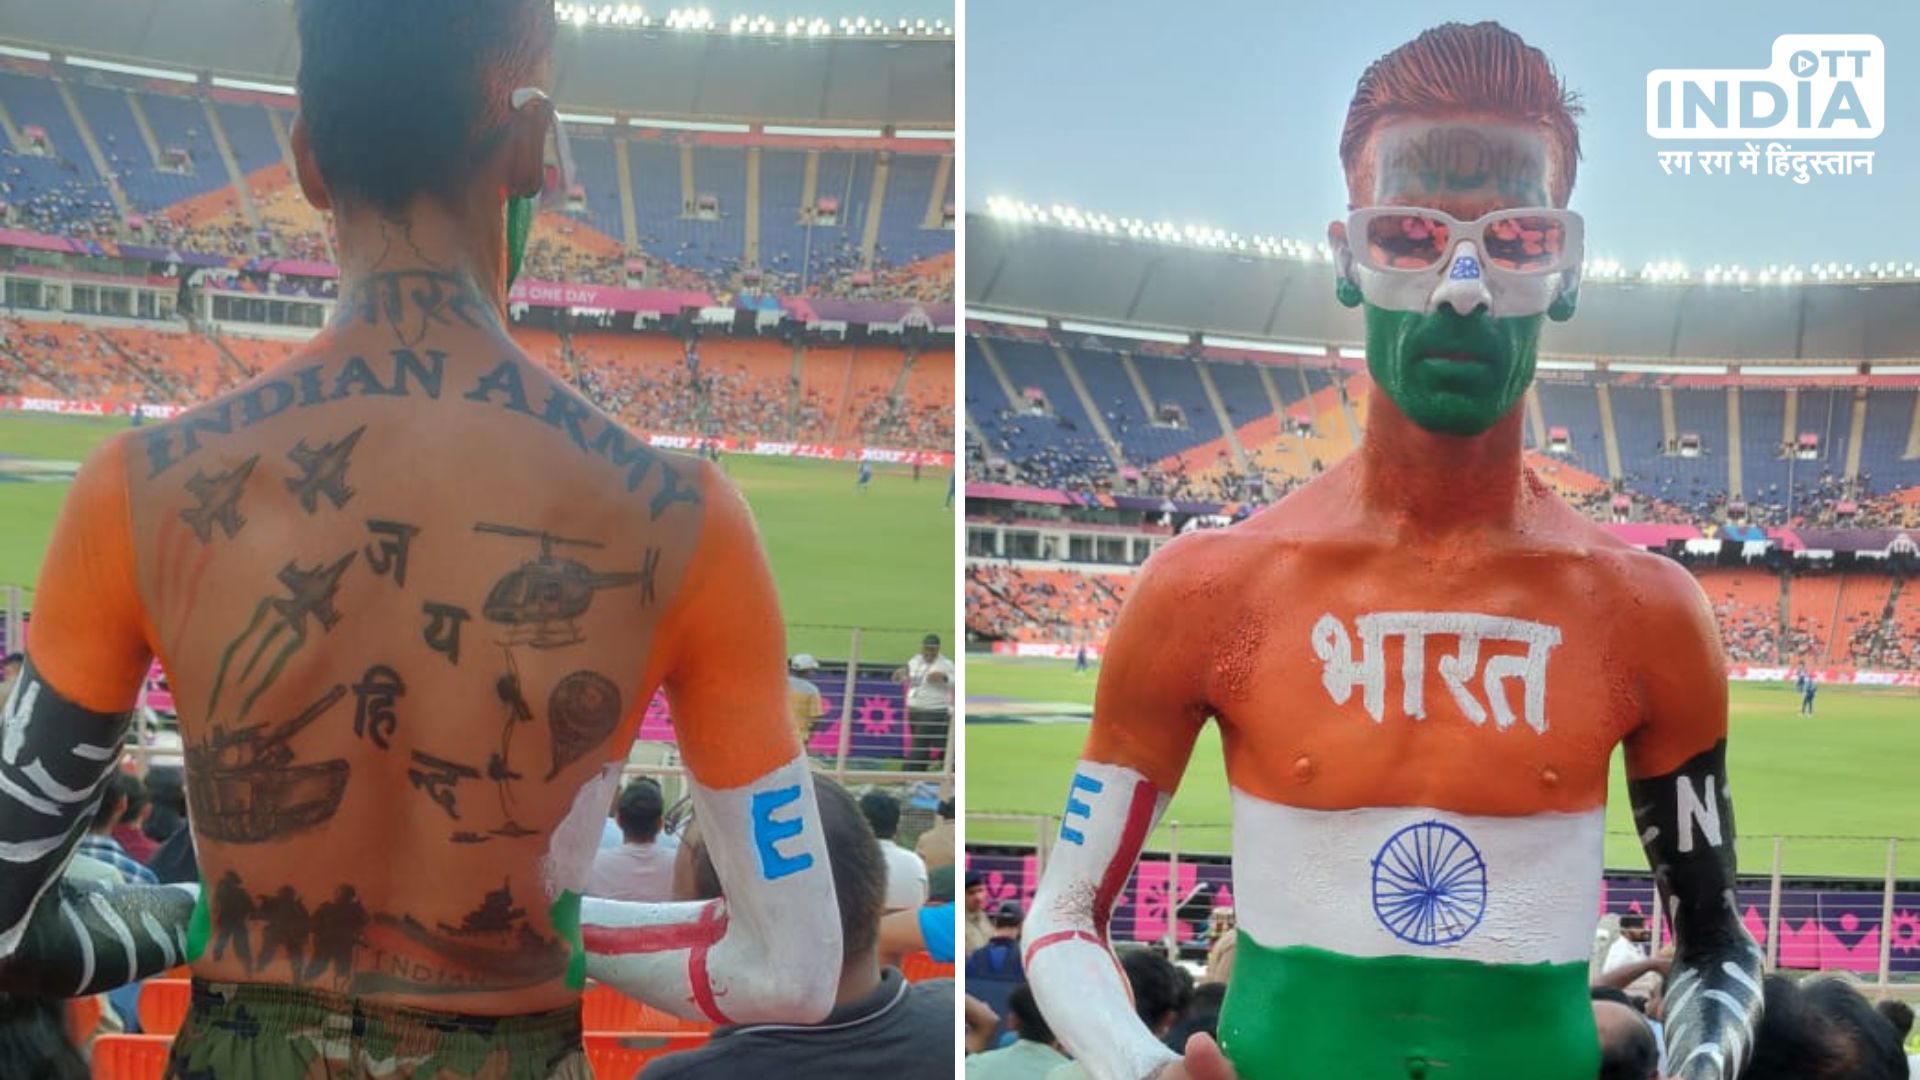 Arun Haryani: माथे पर इंडिया का टैटू और बदन पर लिपटा तिरंगा, मिलिए भारतीय क्रिकेट टीम के जबरा फैन अरुण हरियाणी से…